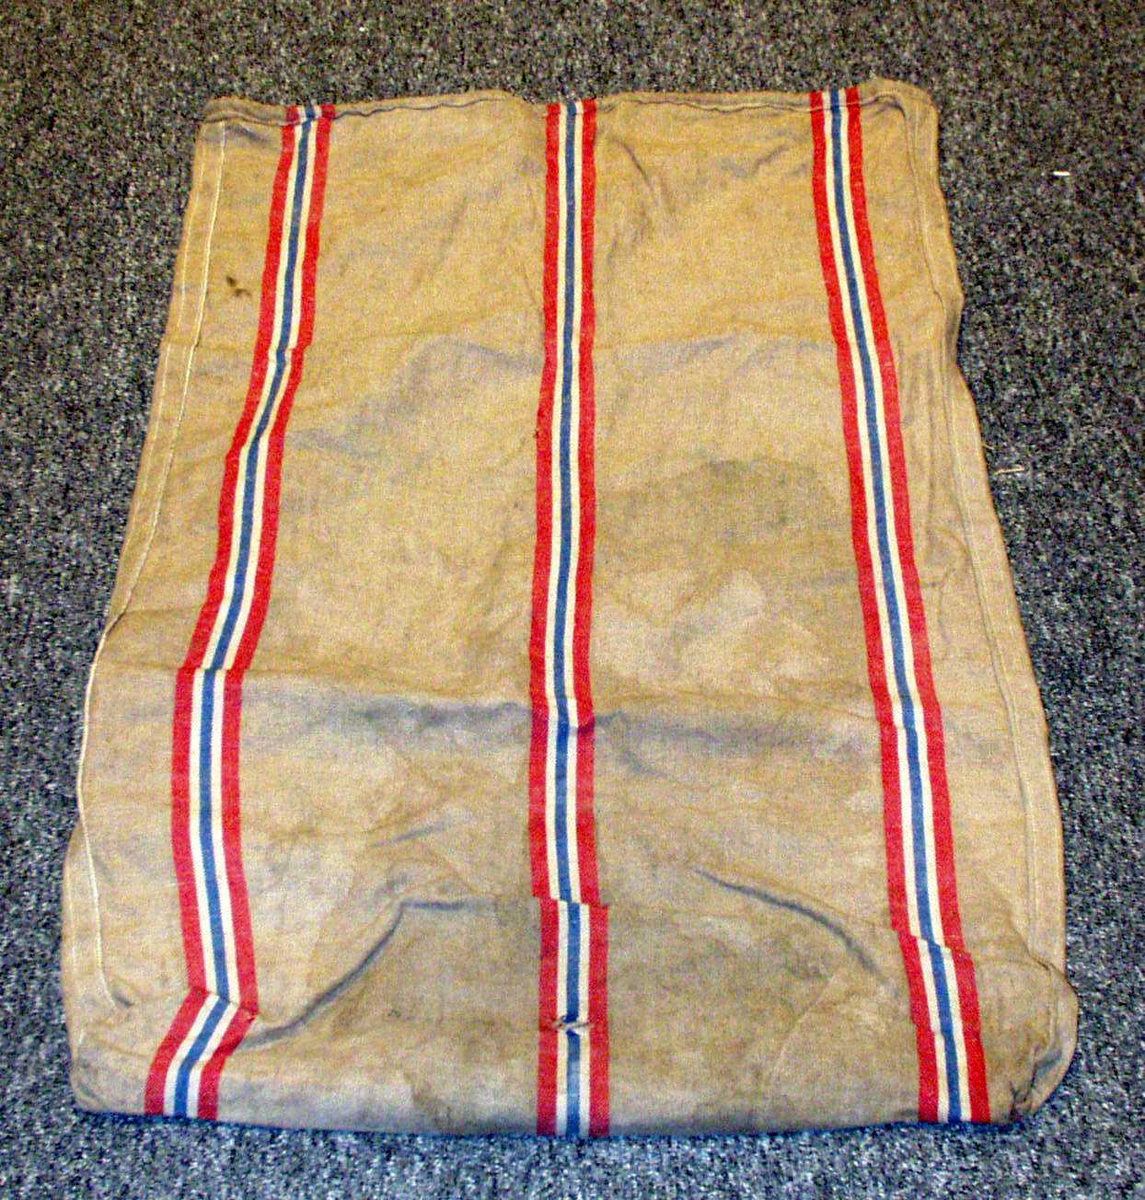 Postsekk i strie med norske striper, rødt, blått og hvitt.